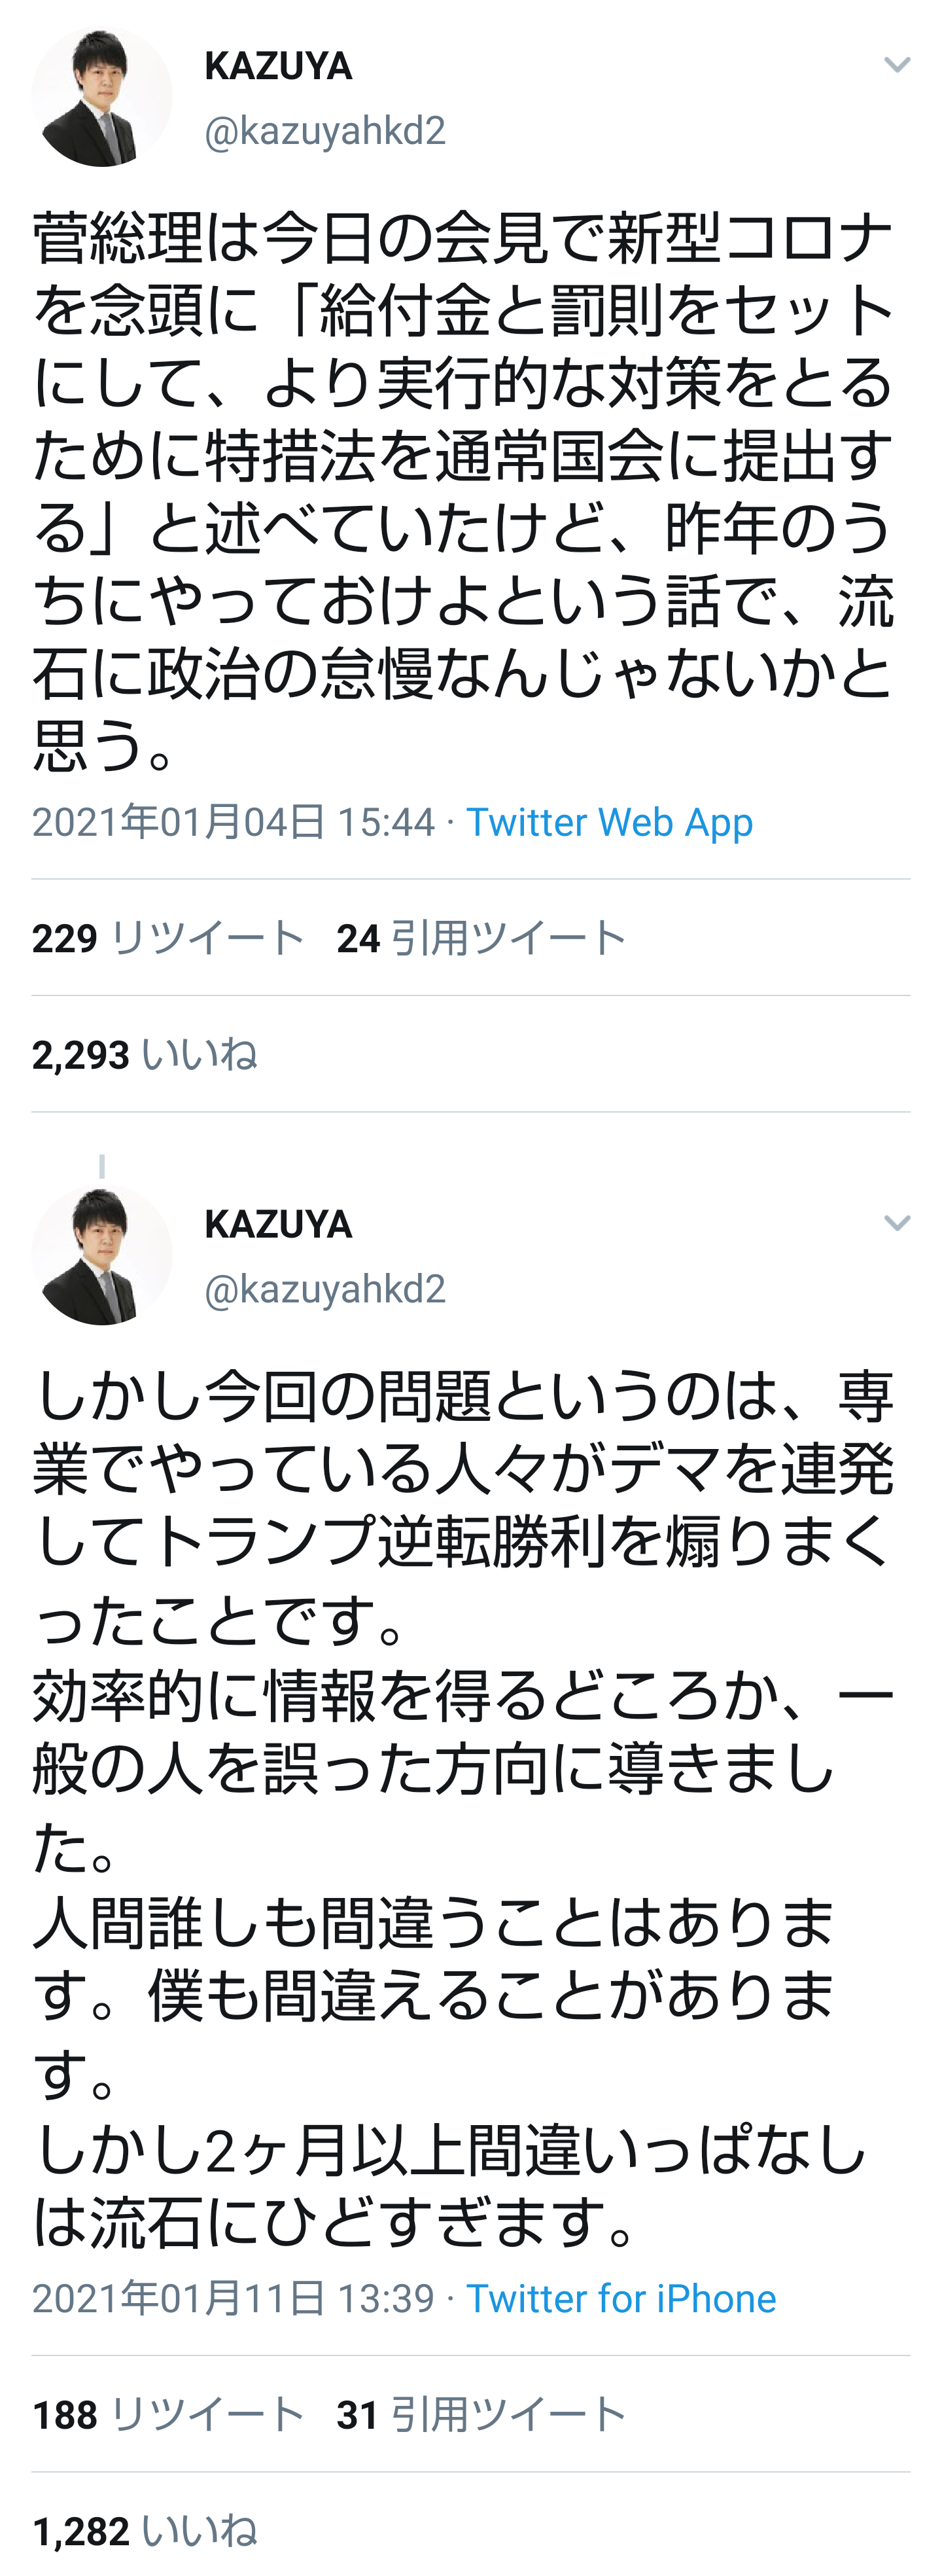 上念司・KAZUYA派（菅×、バイデン○）